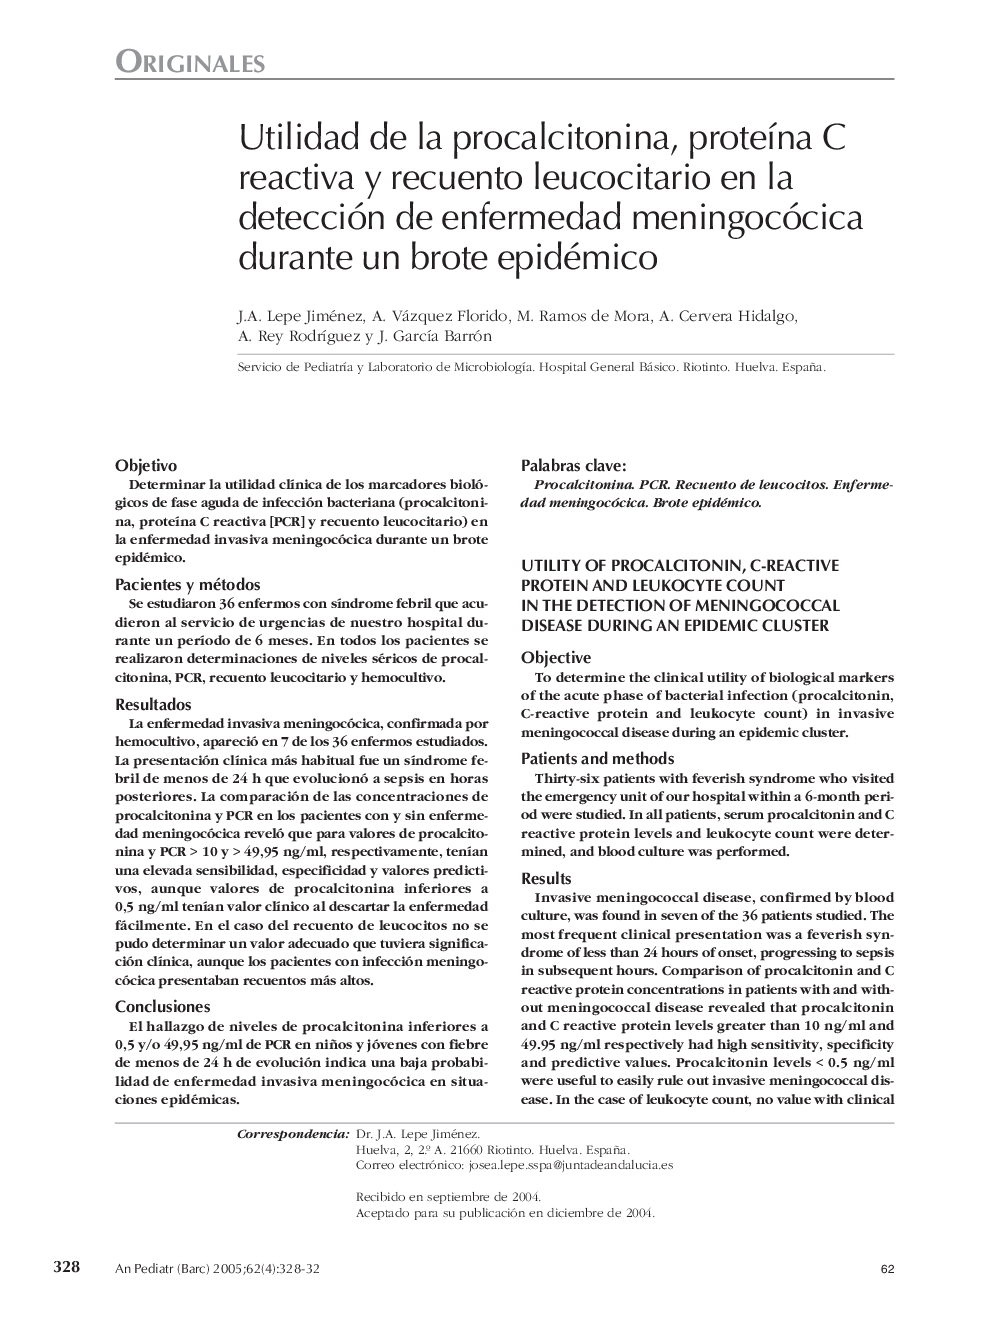 Utilidad de la procalcitonina, proteÃ­na C reactiva y recuento leucocitario en la detección de enfermedad meningocócica durante un brote epidémico